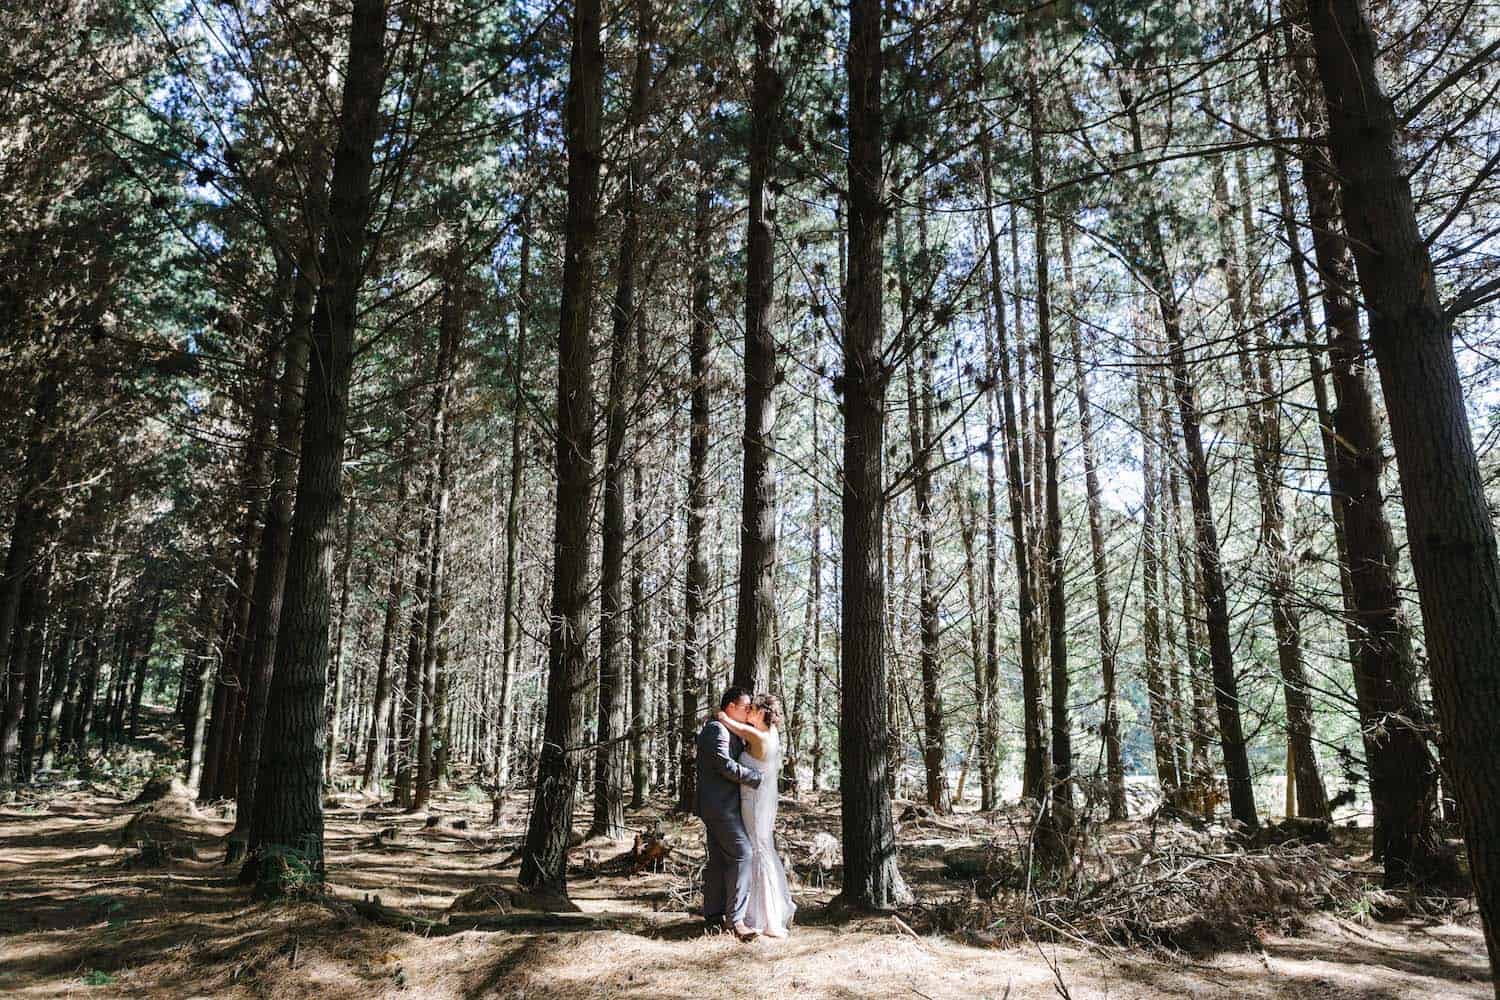 Simple Country Wedding in Wynyard Tasmania | Dayna and Stu’s Forest Wedding